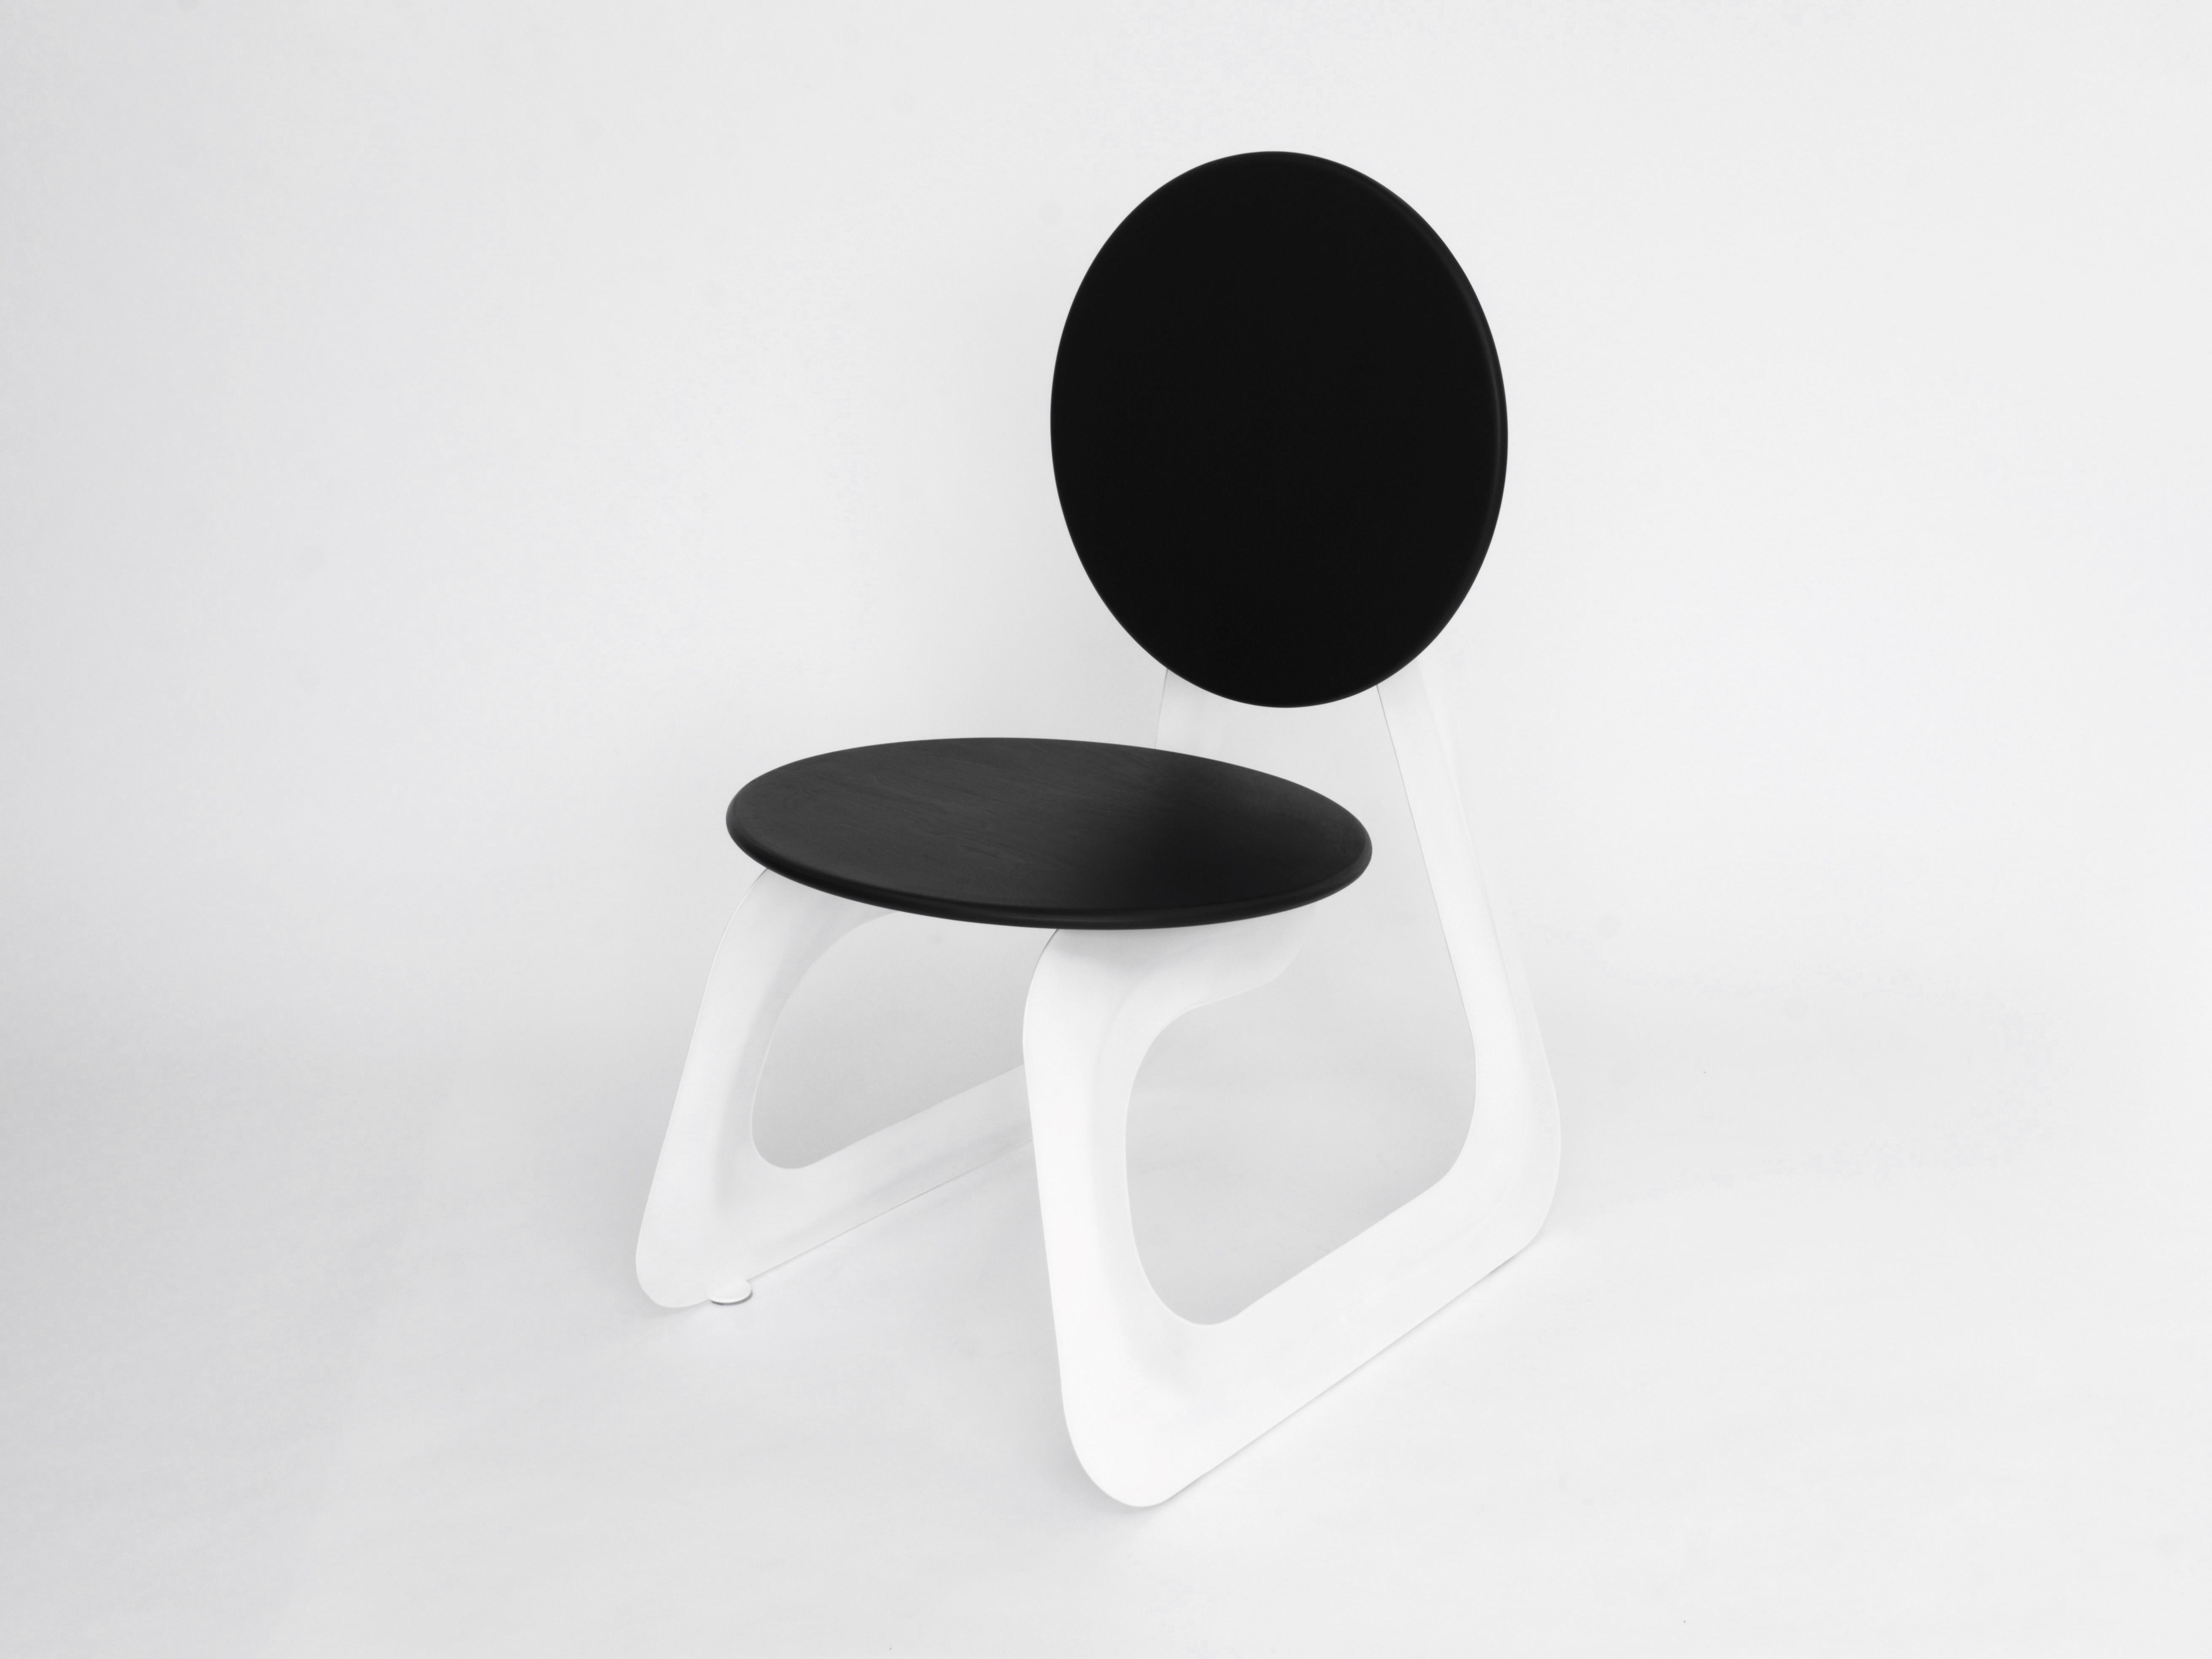 La chaise Aeroformed est un design futuriste qui met en valeur le processus de fabrication innovant de l'